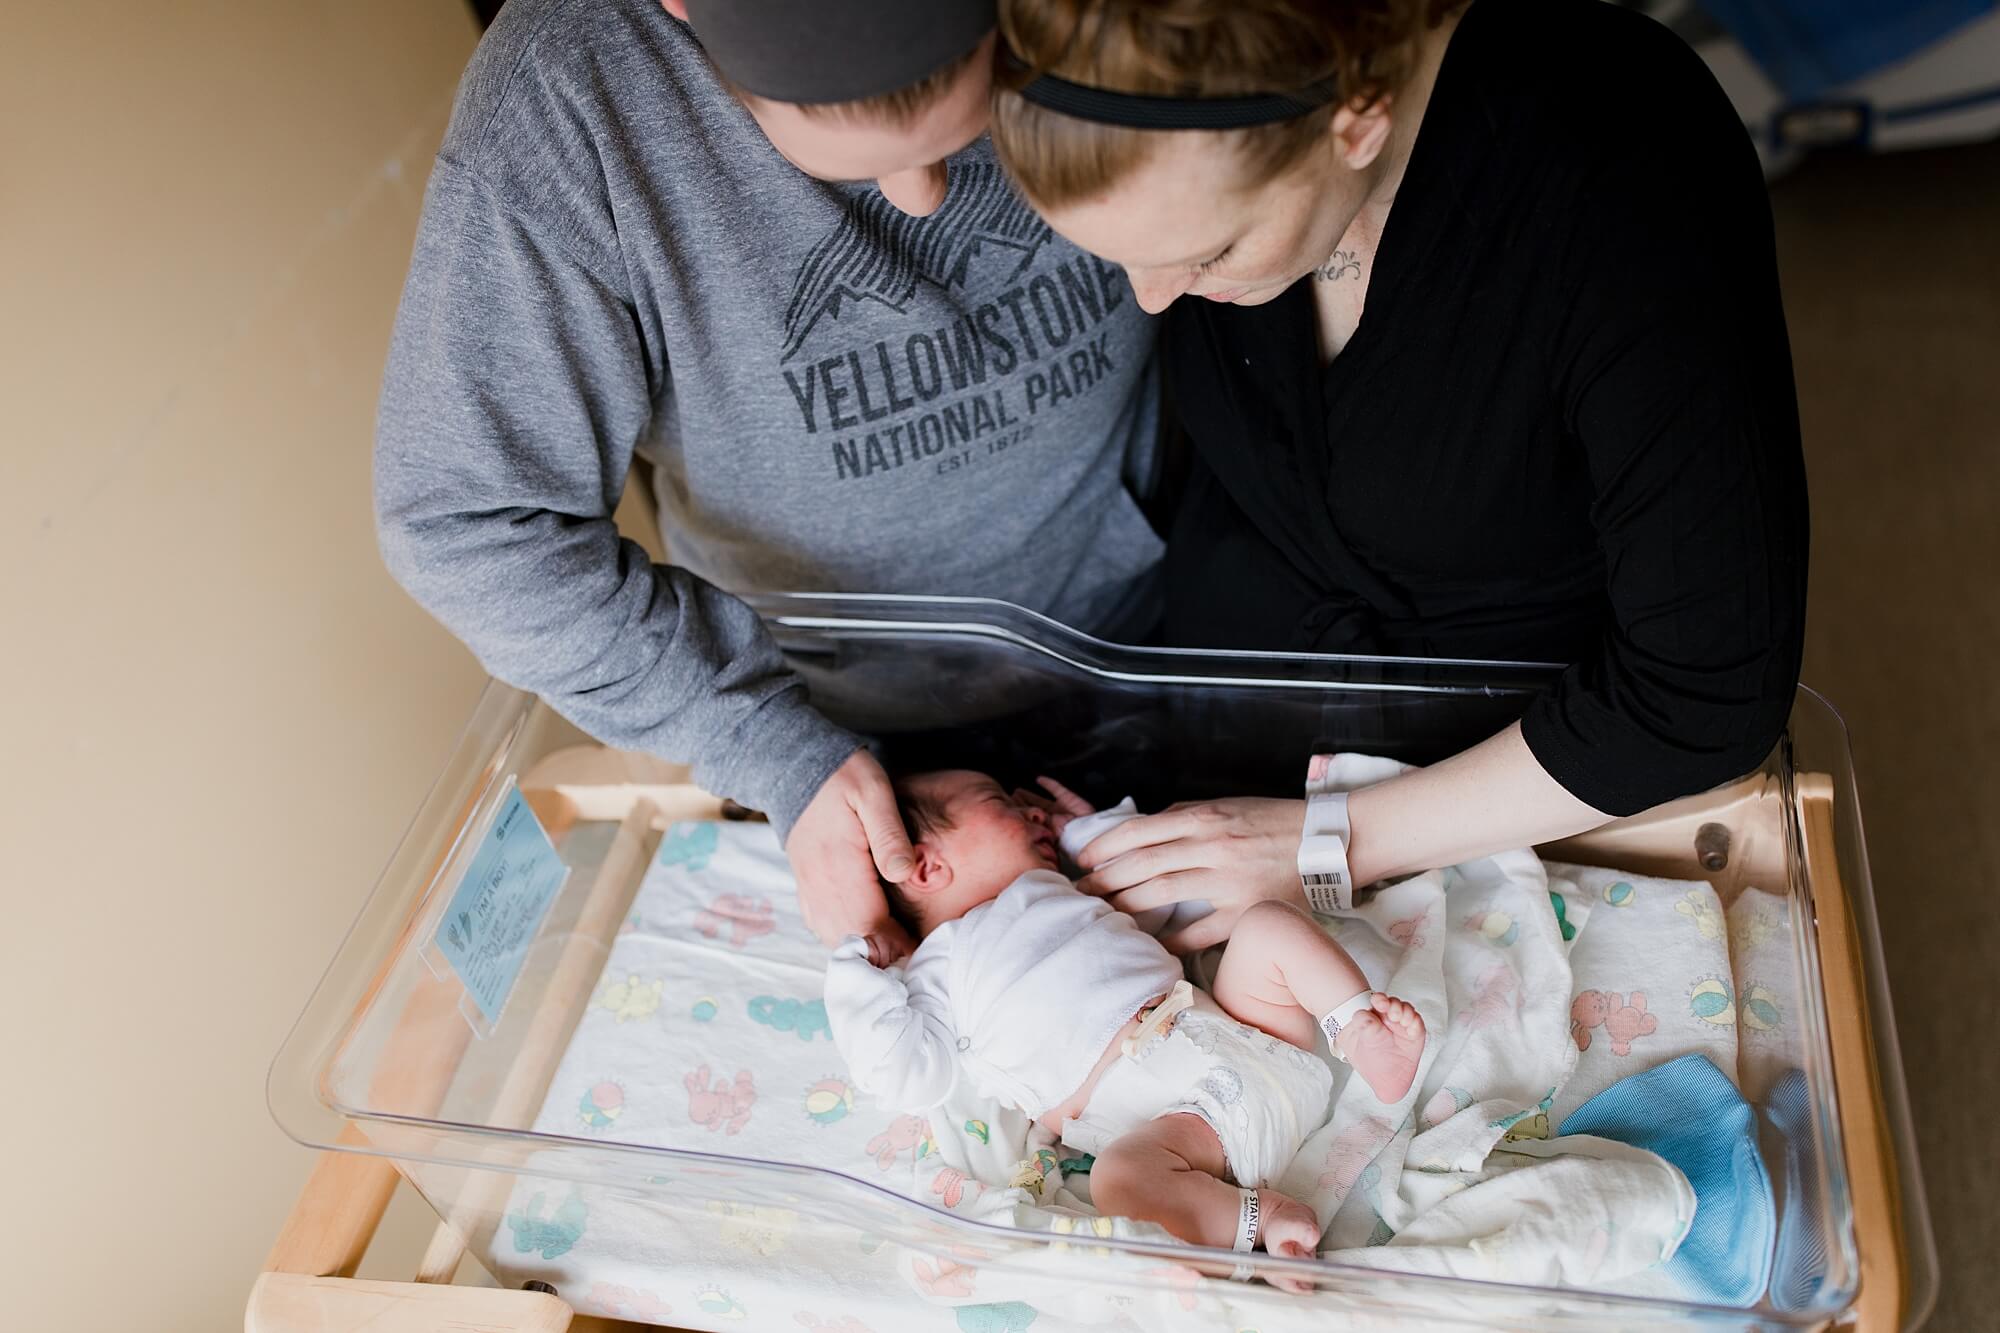 fresh48 baby photography session Swedish hospital issaquah